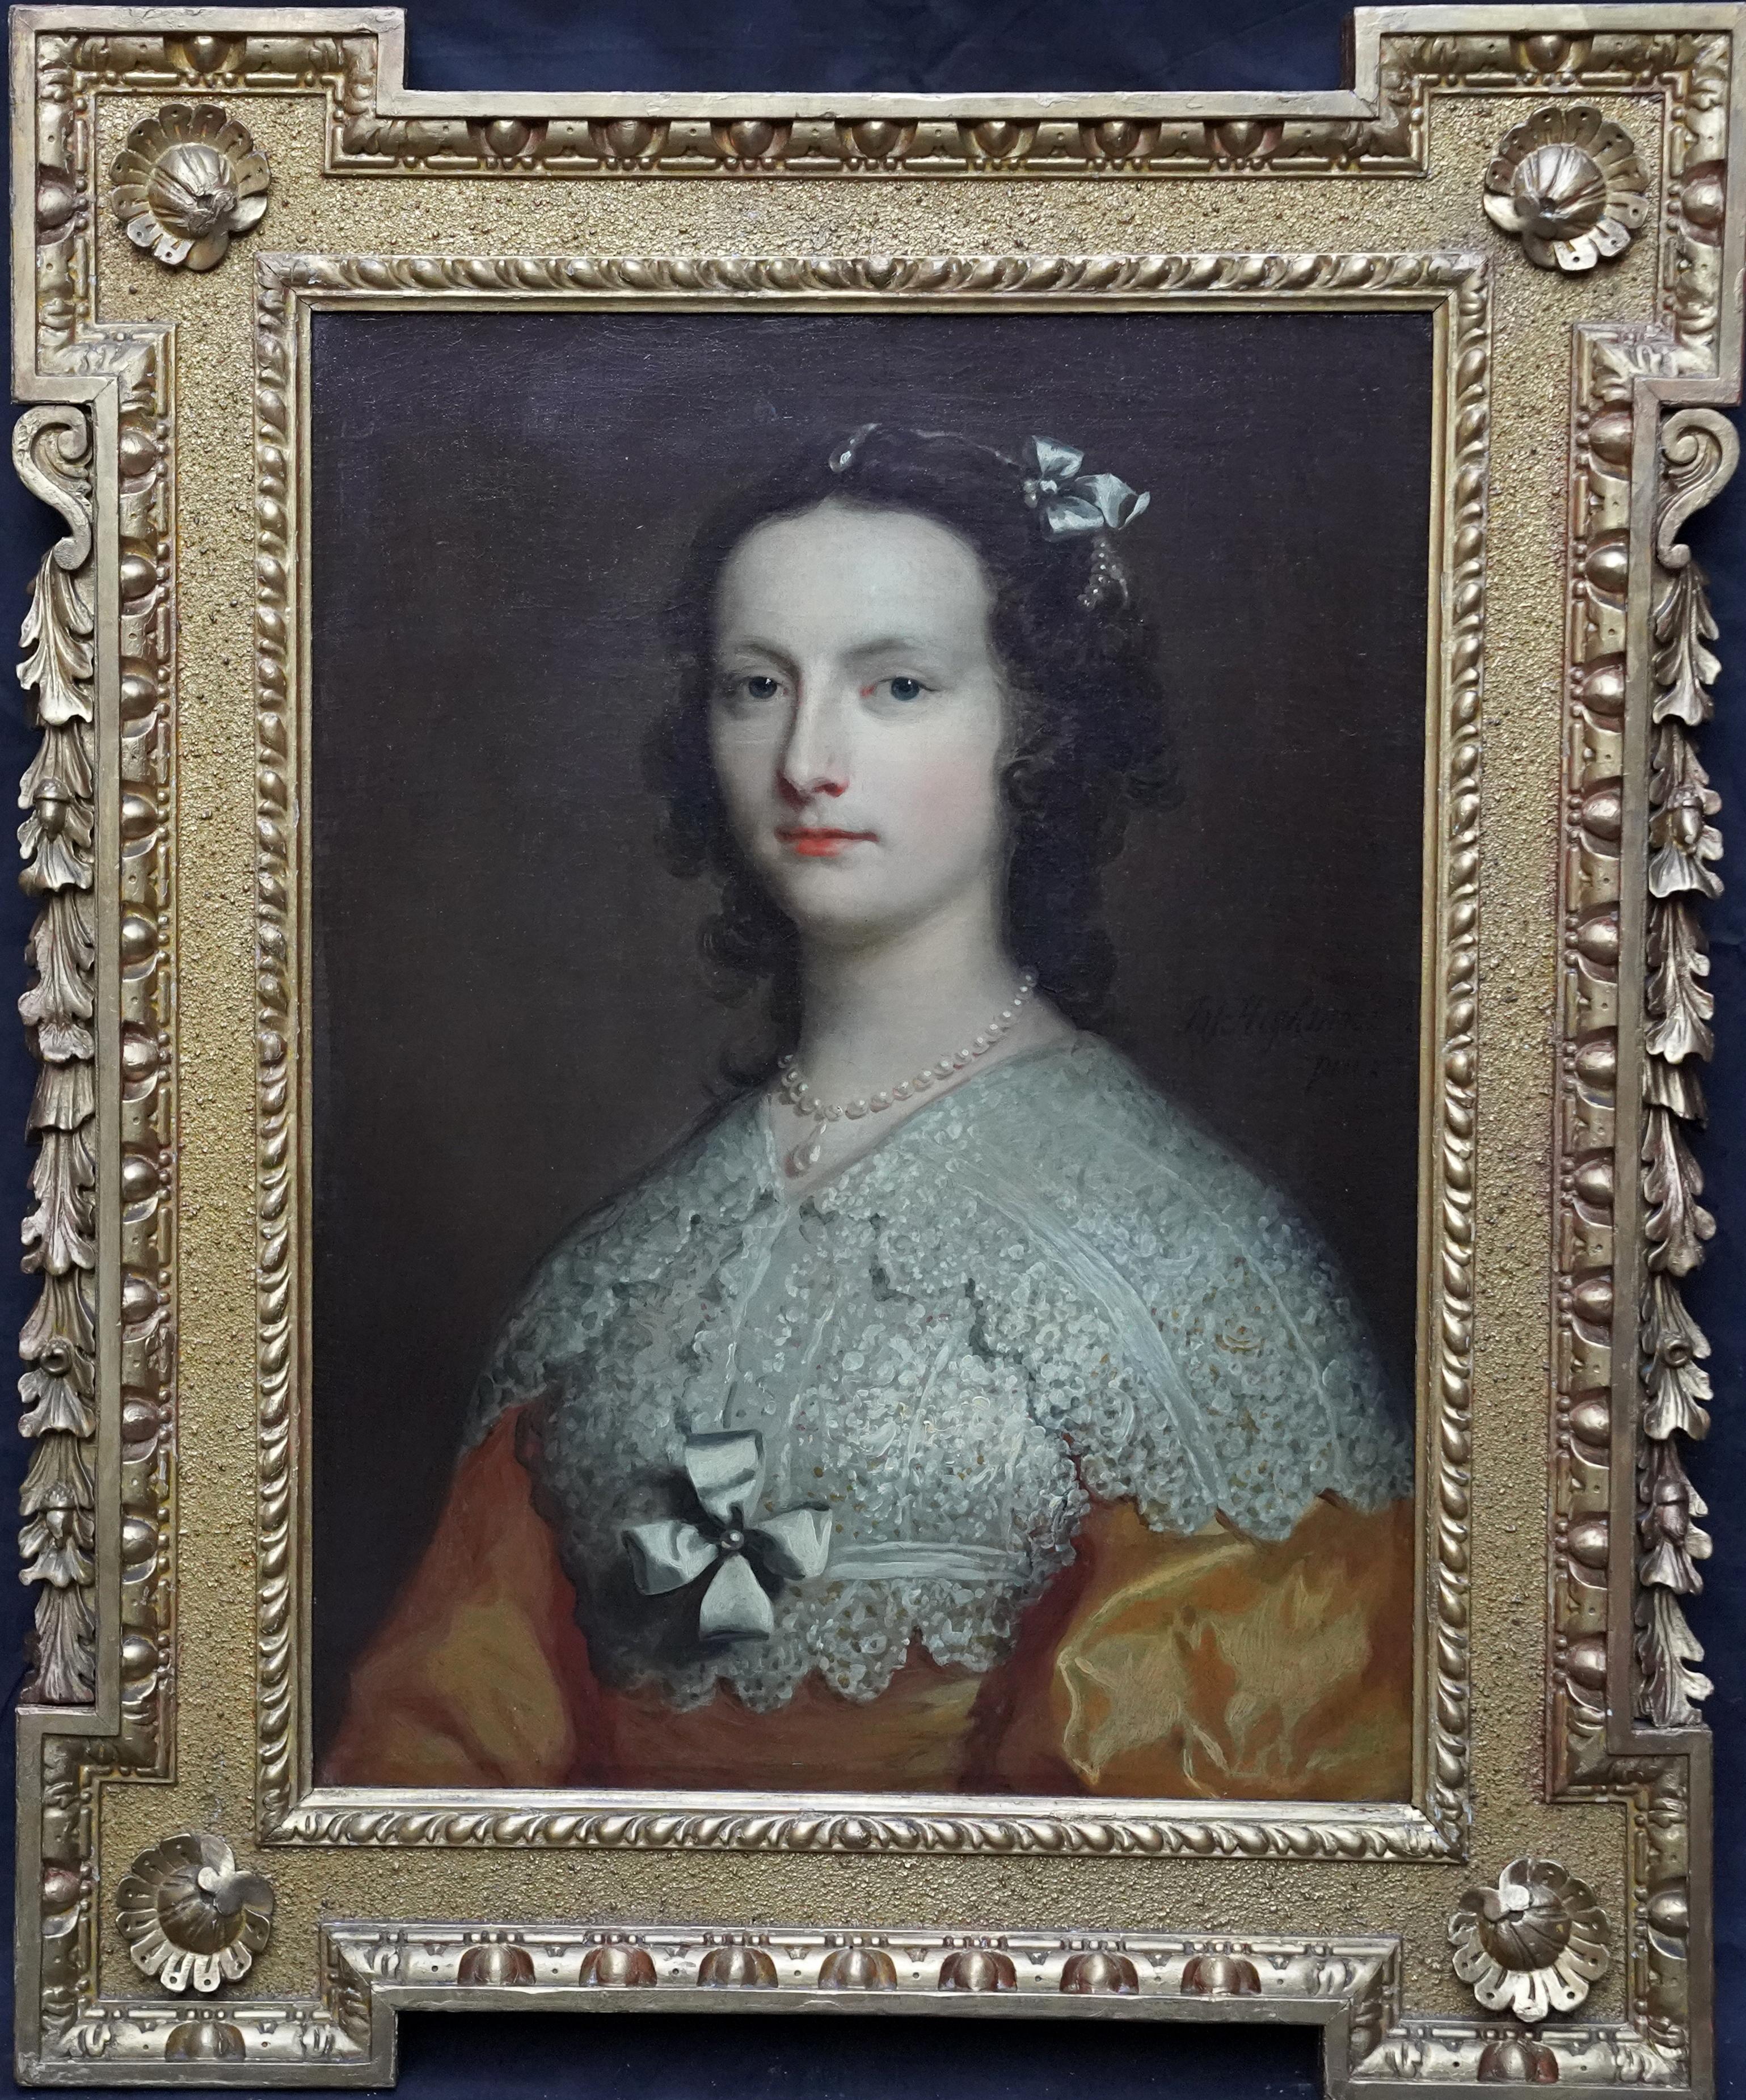 Portrait Painting Joseph Highmore - Portrait d'Elizabeth Banks - Art britannique du 18ème siècle - Peinture à l'huile de maître ancien